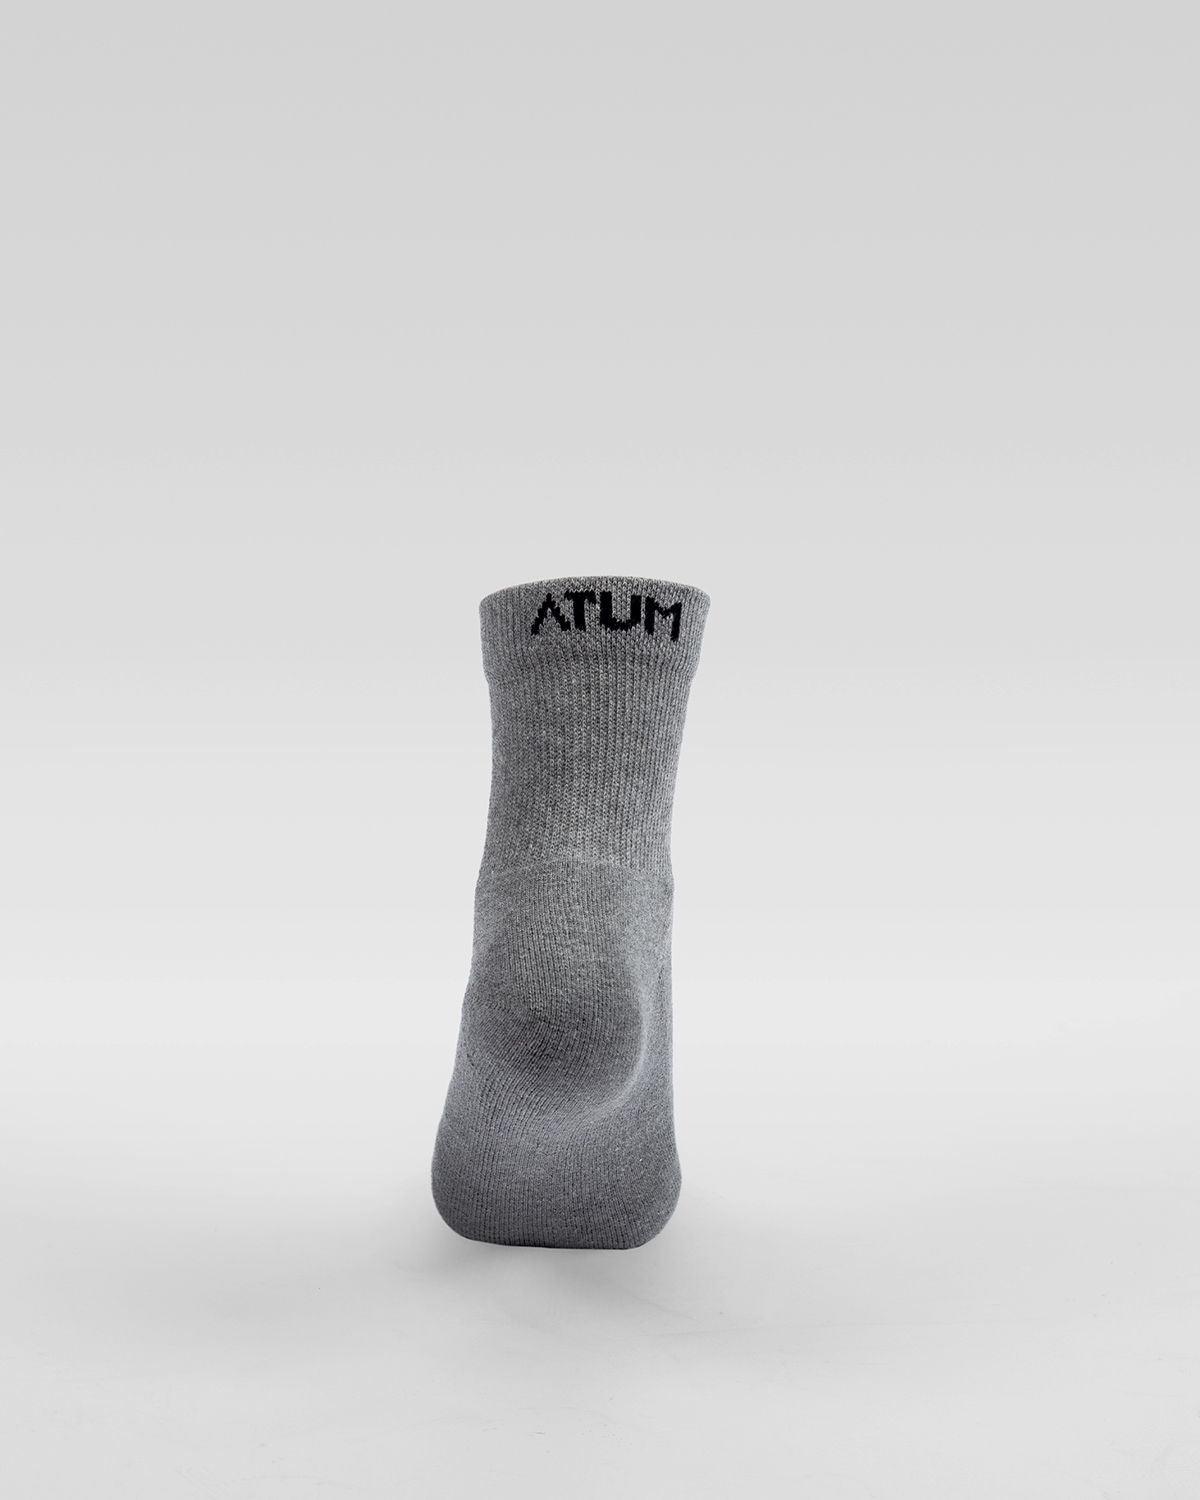 Atum Kids Mid-crew socks - pack of 3